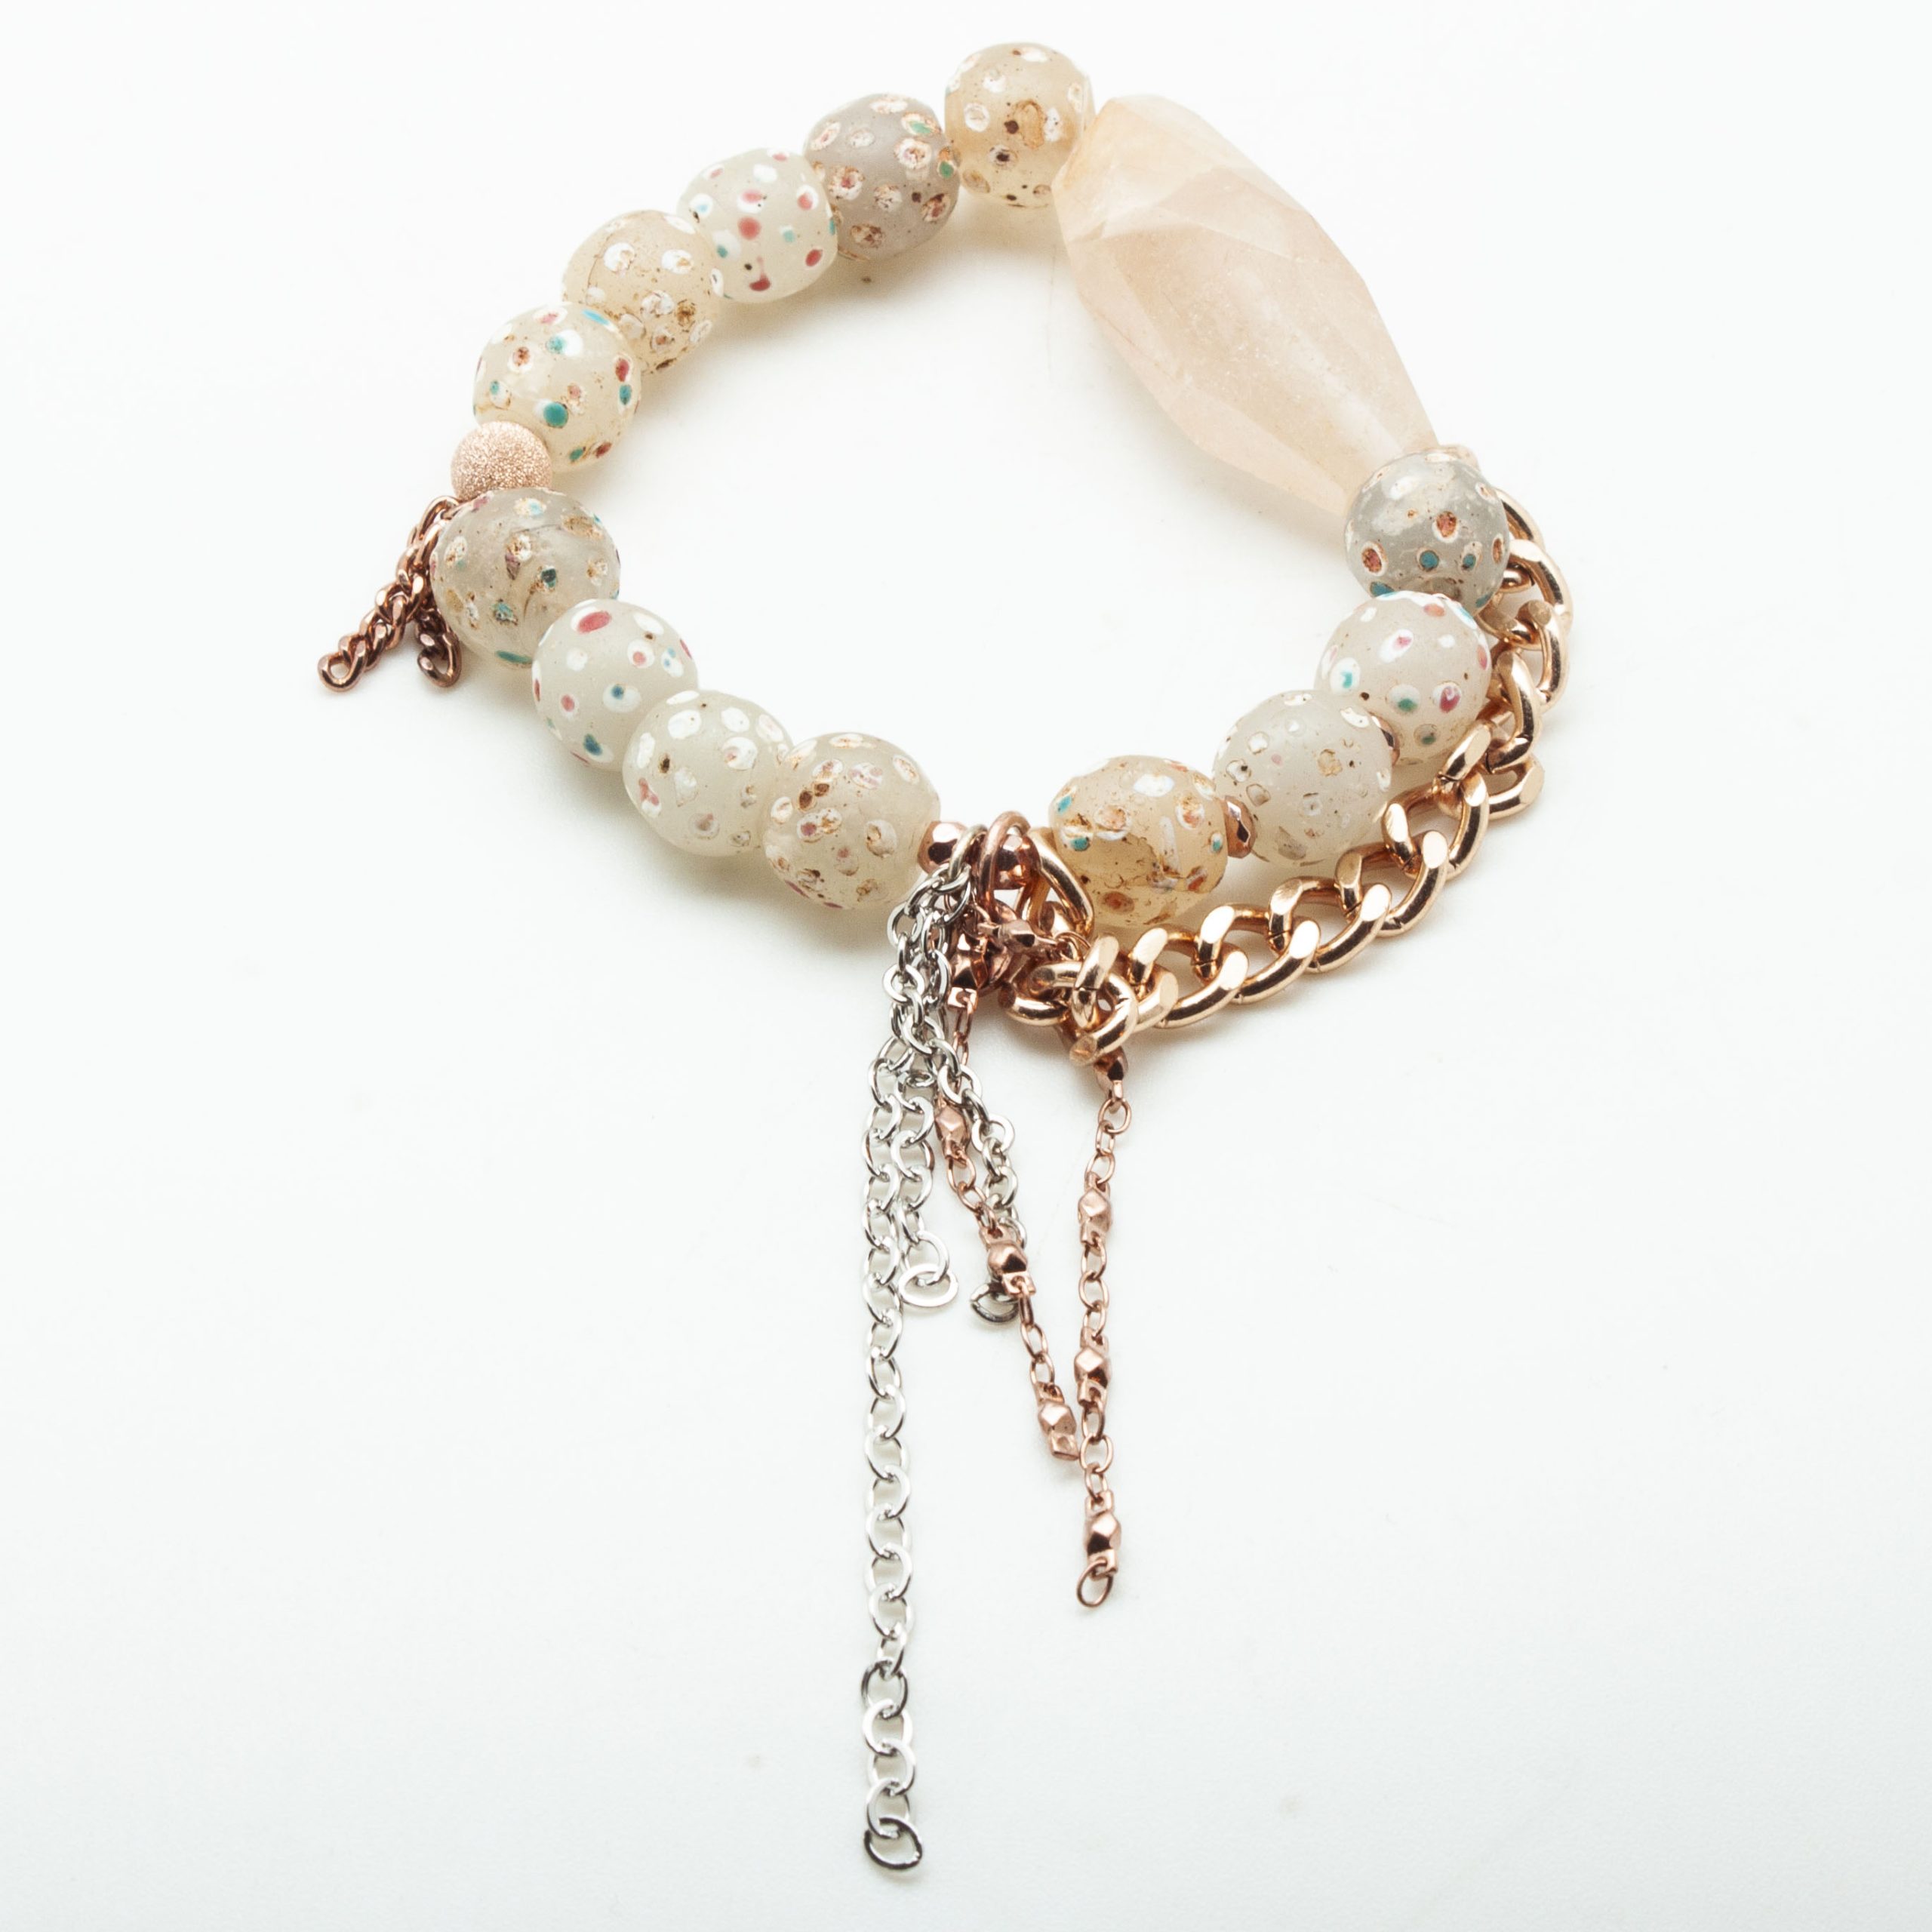 Handpainted Glass Beads